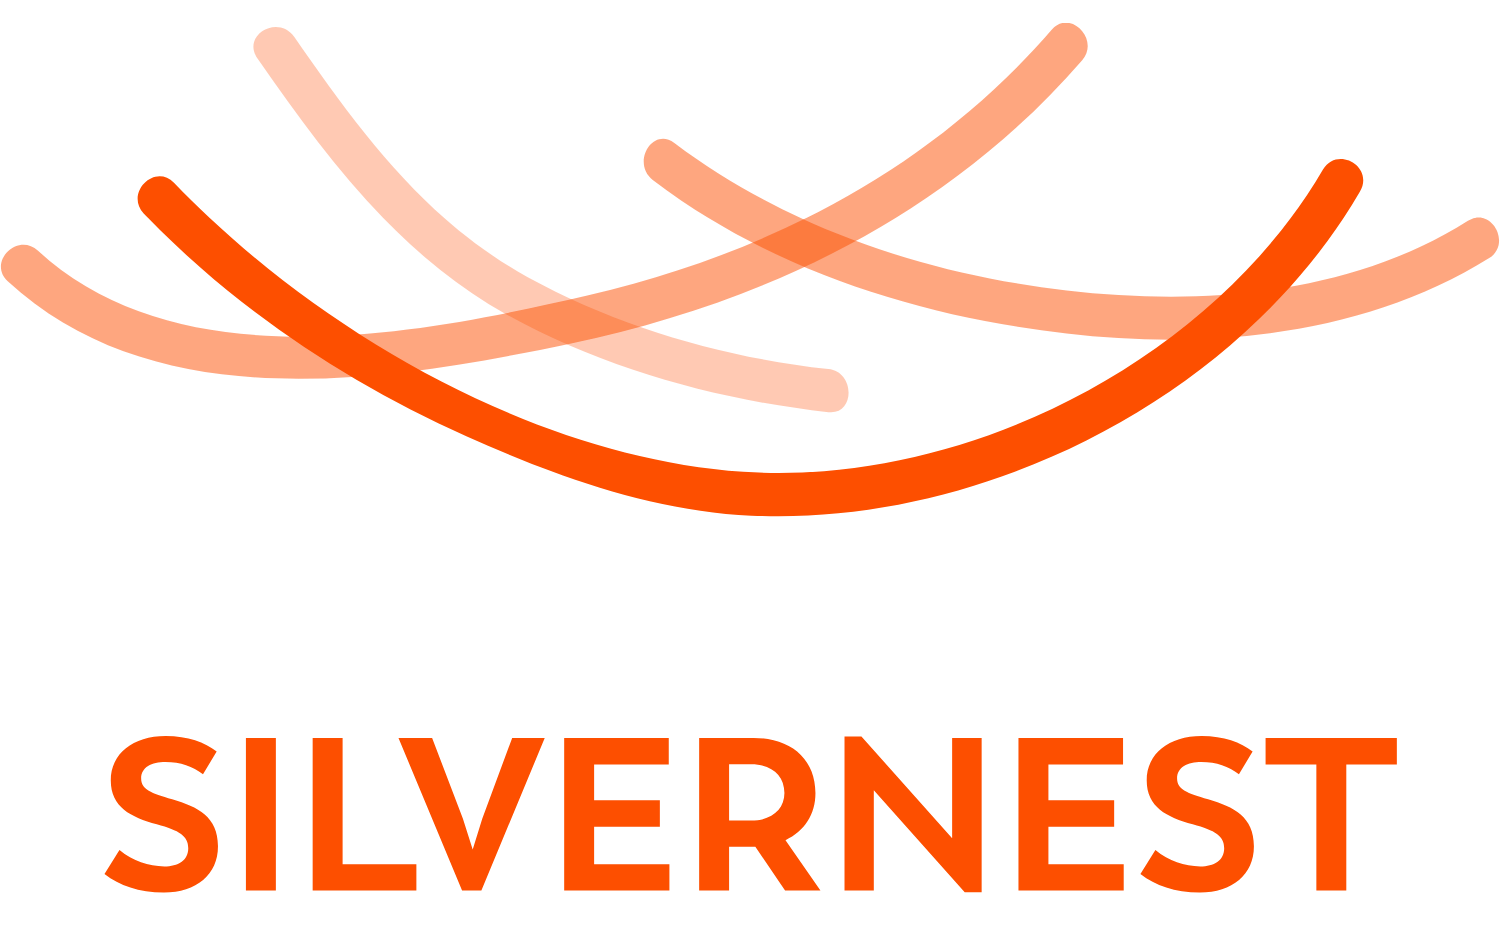 Silvernest Logo Orange